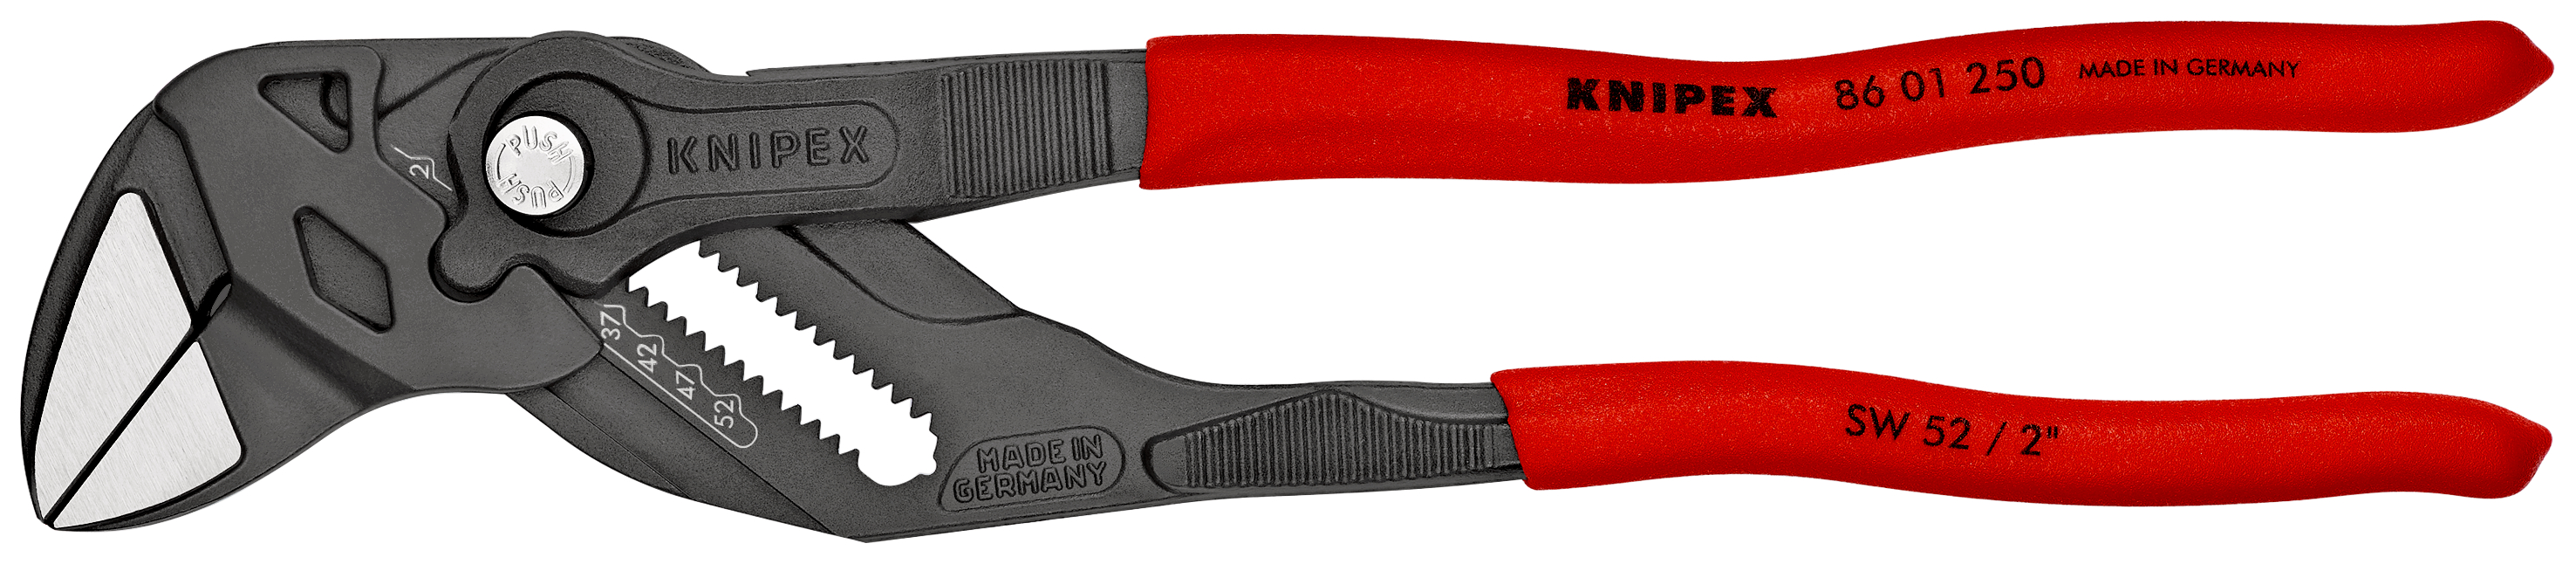 KNIPEX Zangenschlüssel Zange und Schraubenschlüssel in einem Werkzeug mit rutschhemmendem Kunststoff